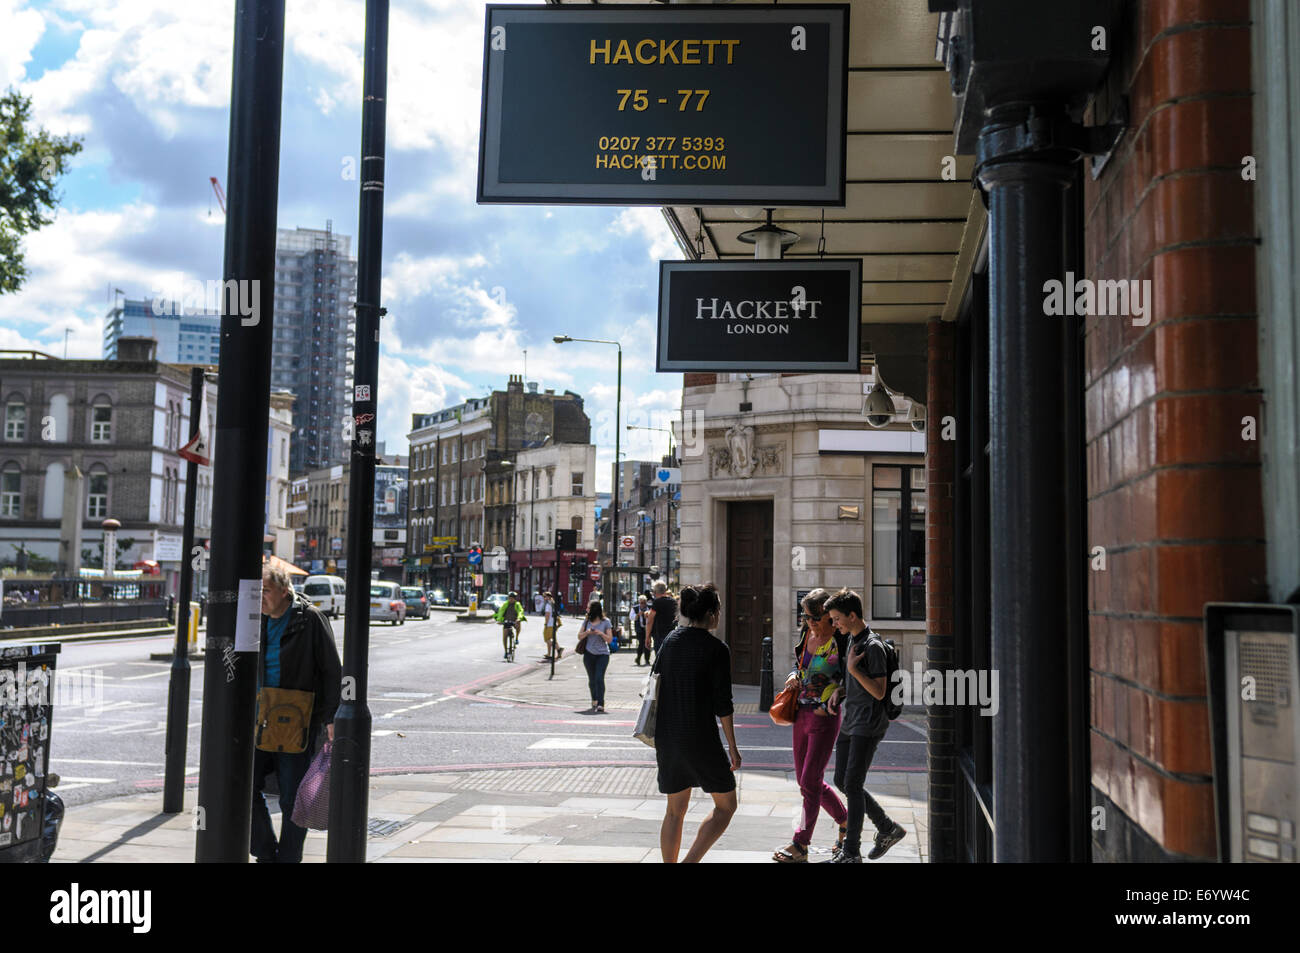 View of Hackett shop in Spitafields, London, UK Stock Photo